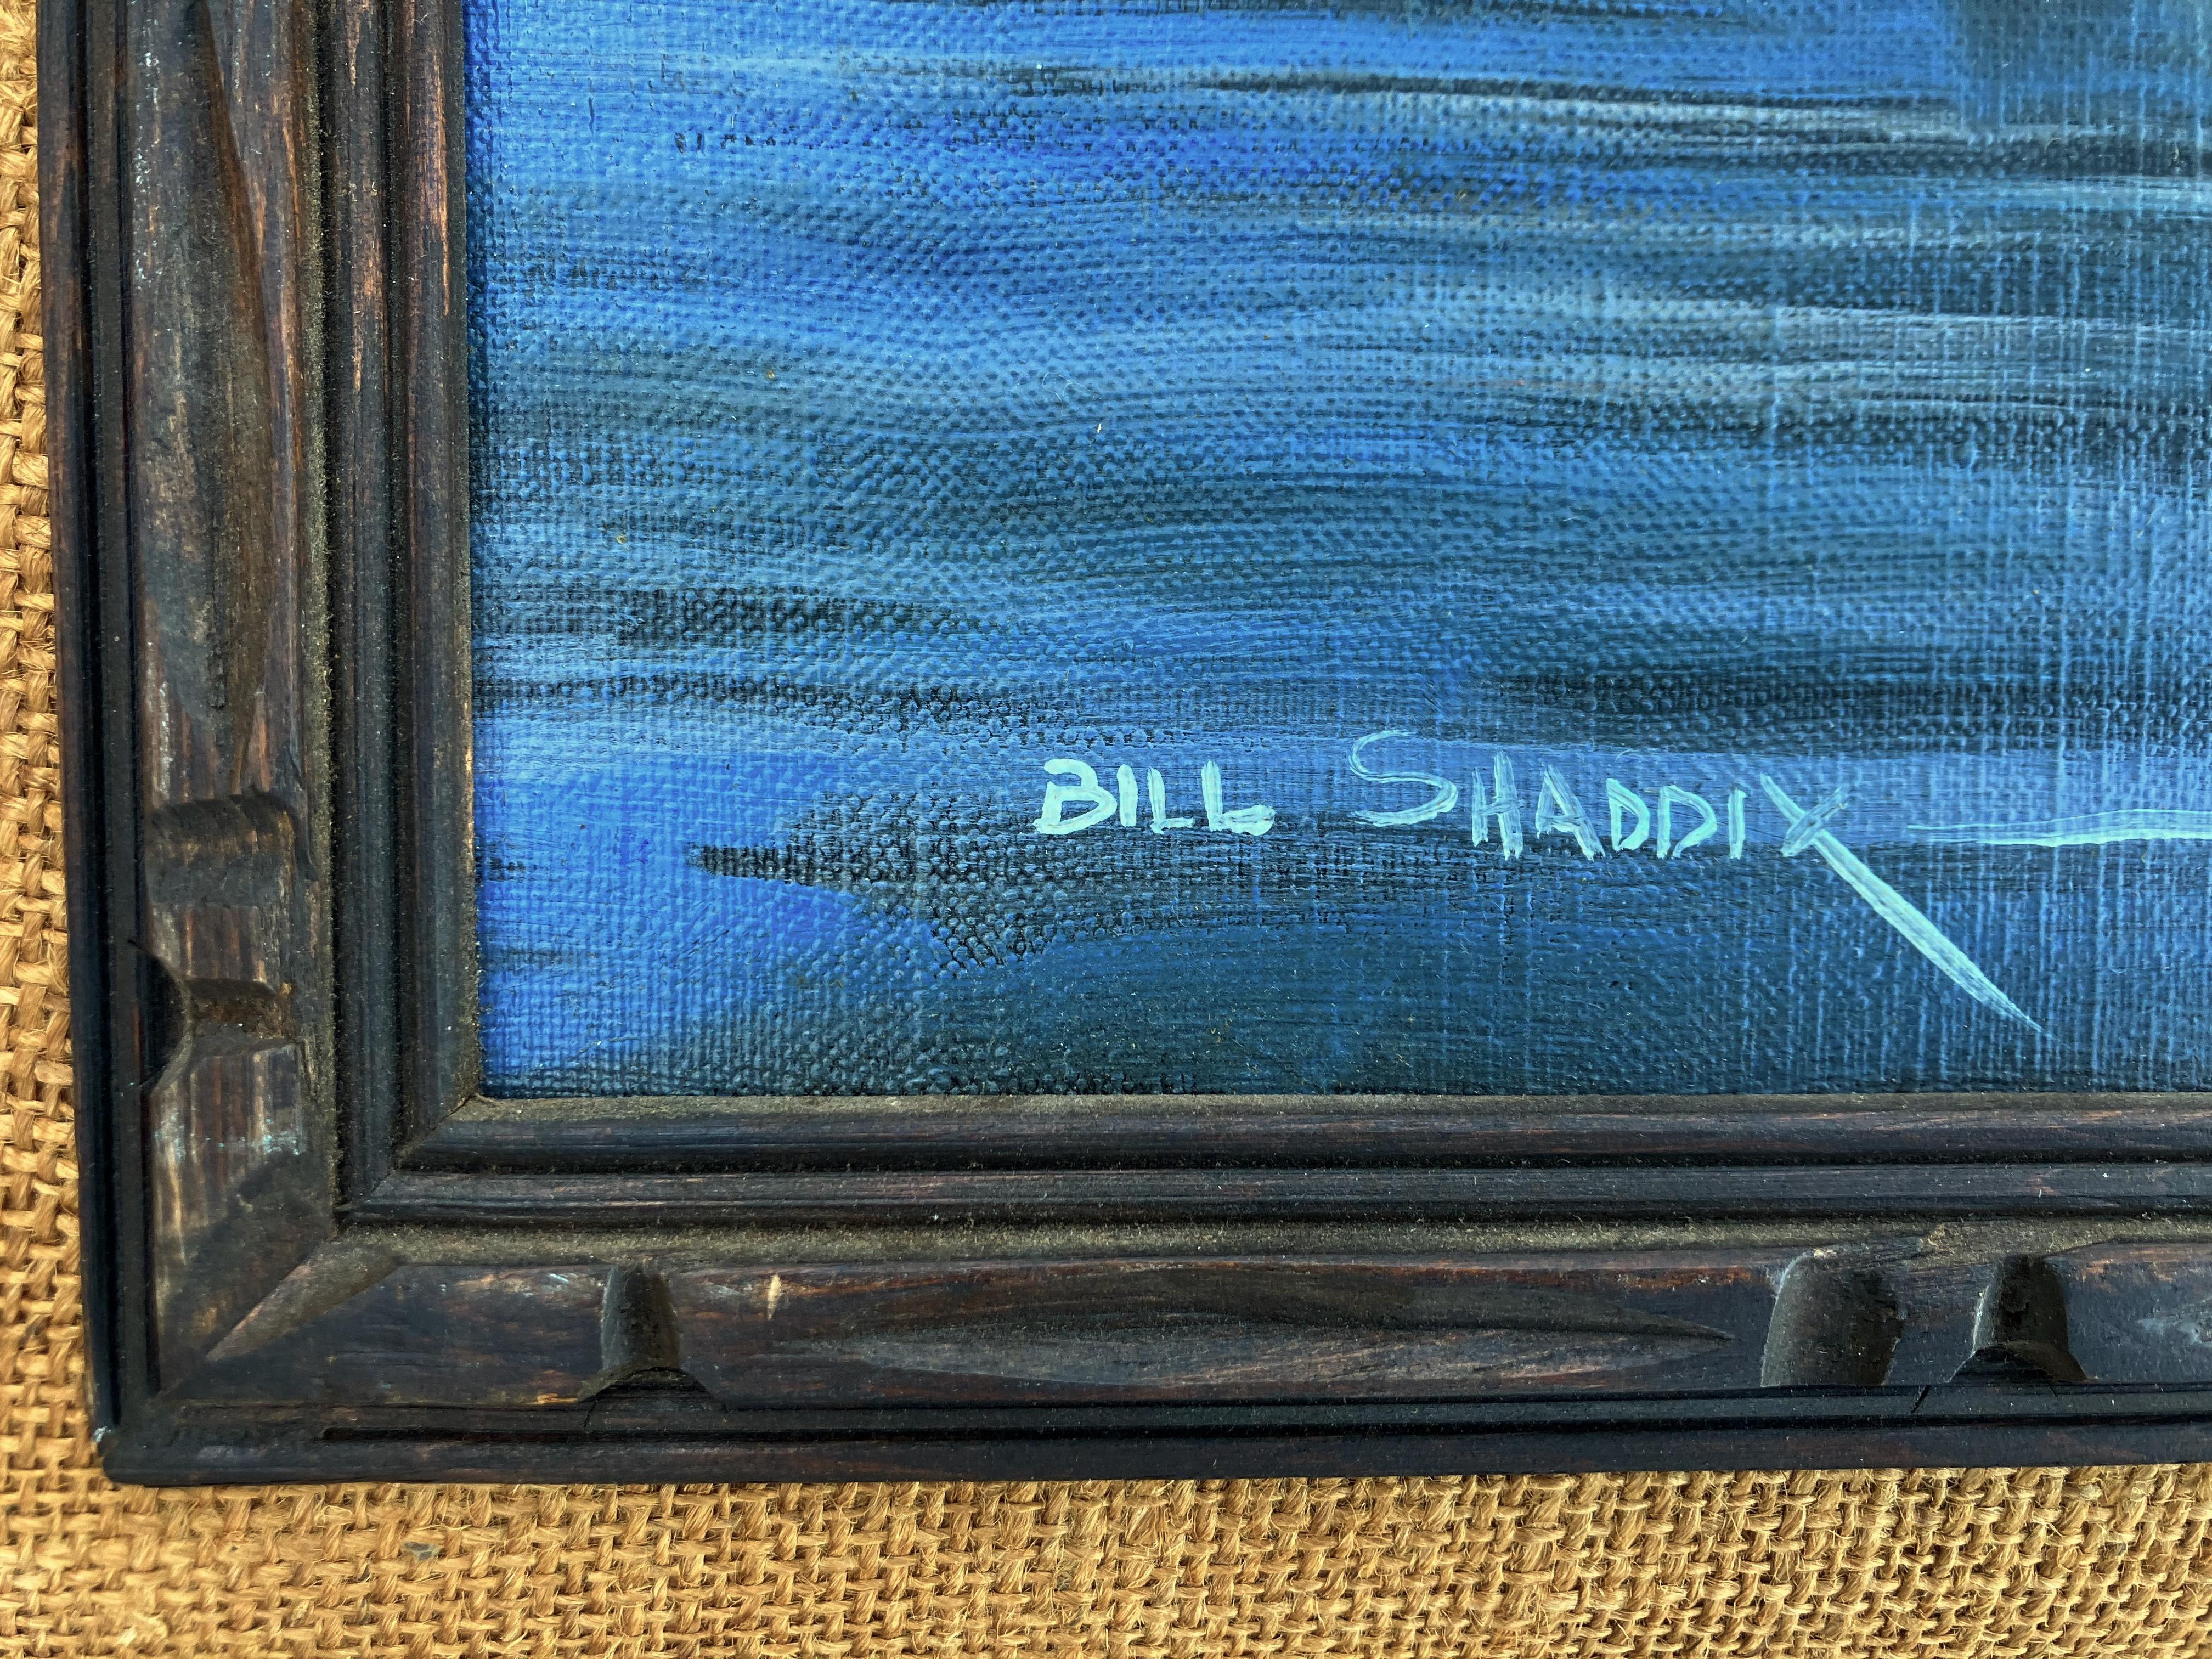 Artiste : Bill Shaddix - Américain (1931- )
Titre : Ombres profondes
Année : circa 1980
Médium : Huile sur toile
Taille : 15,5 x 19,5 pouces. 
Taille du cadre : 27 x 31 pouces
Signature : Signé en bas à gauche
Condit : Très bon

Ce paysage d'hiver